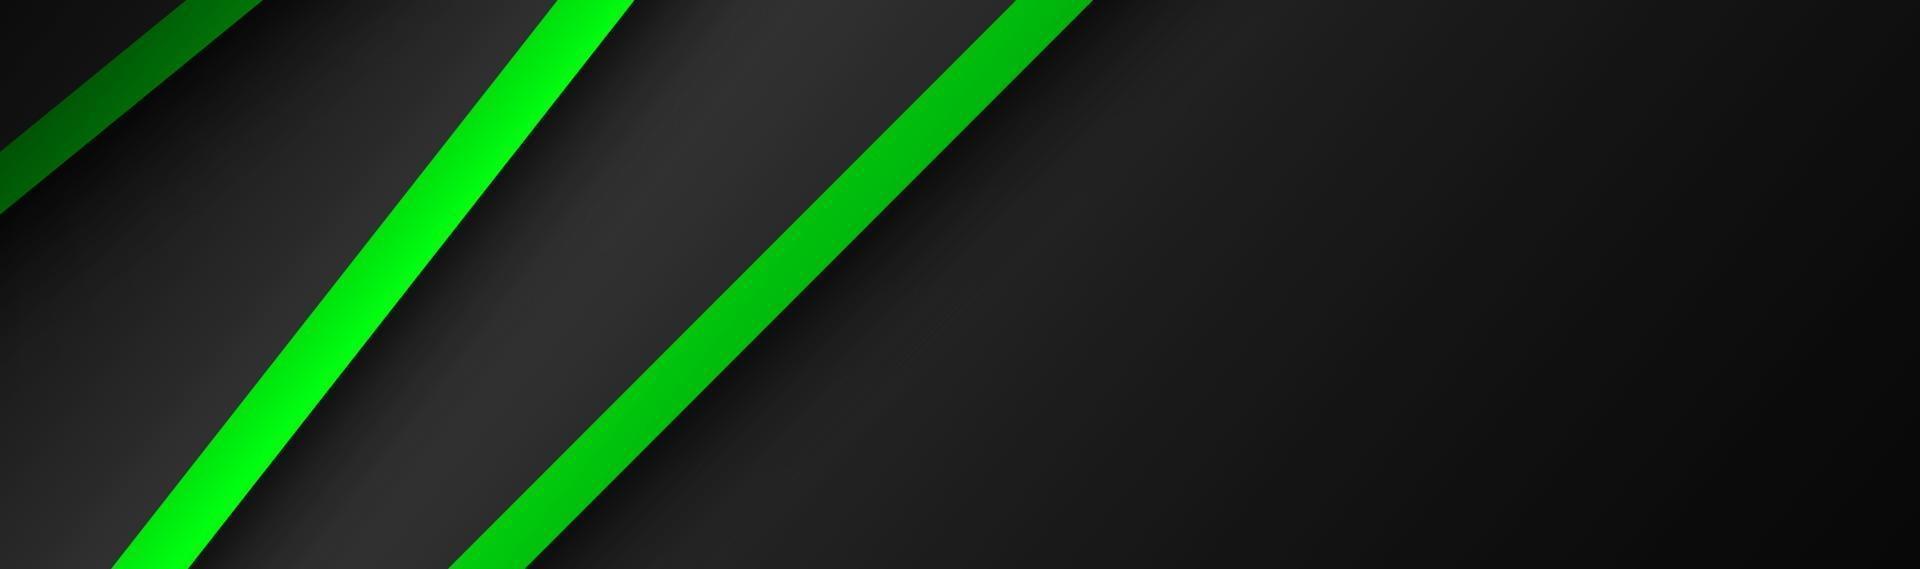 Encabezado de vector abstracto con capas verdes y negras una encima de la otra banner de diseño moderno para su ilustración de vector de negocio con rayas y líneas oblicuas